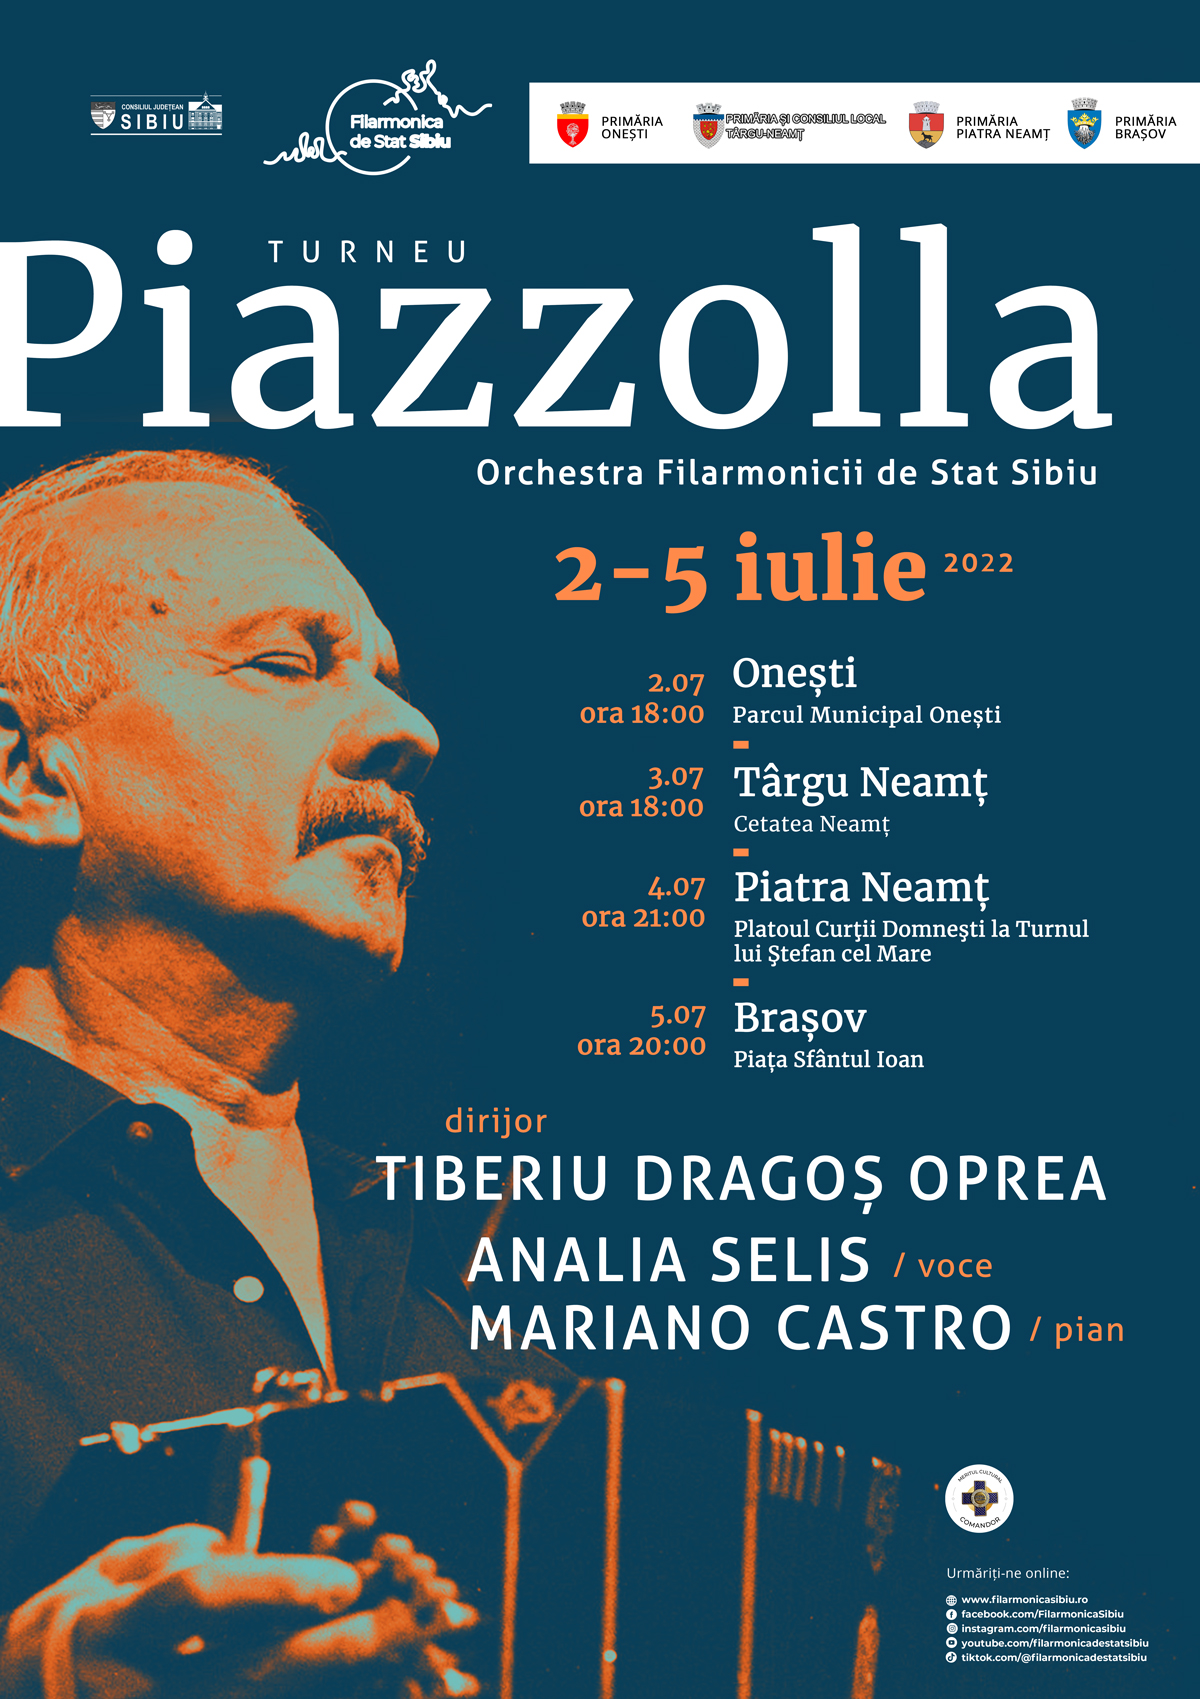 Turneu Piazzolla